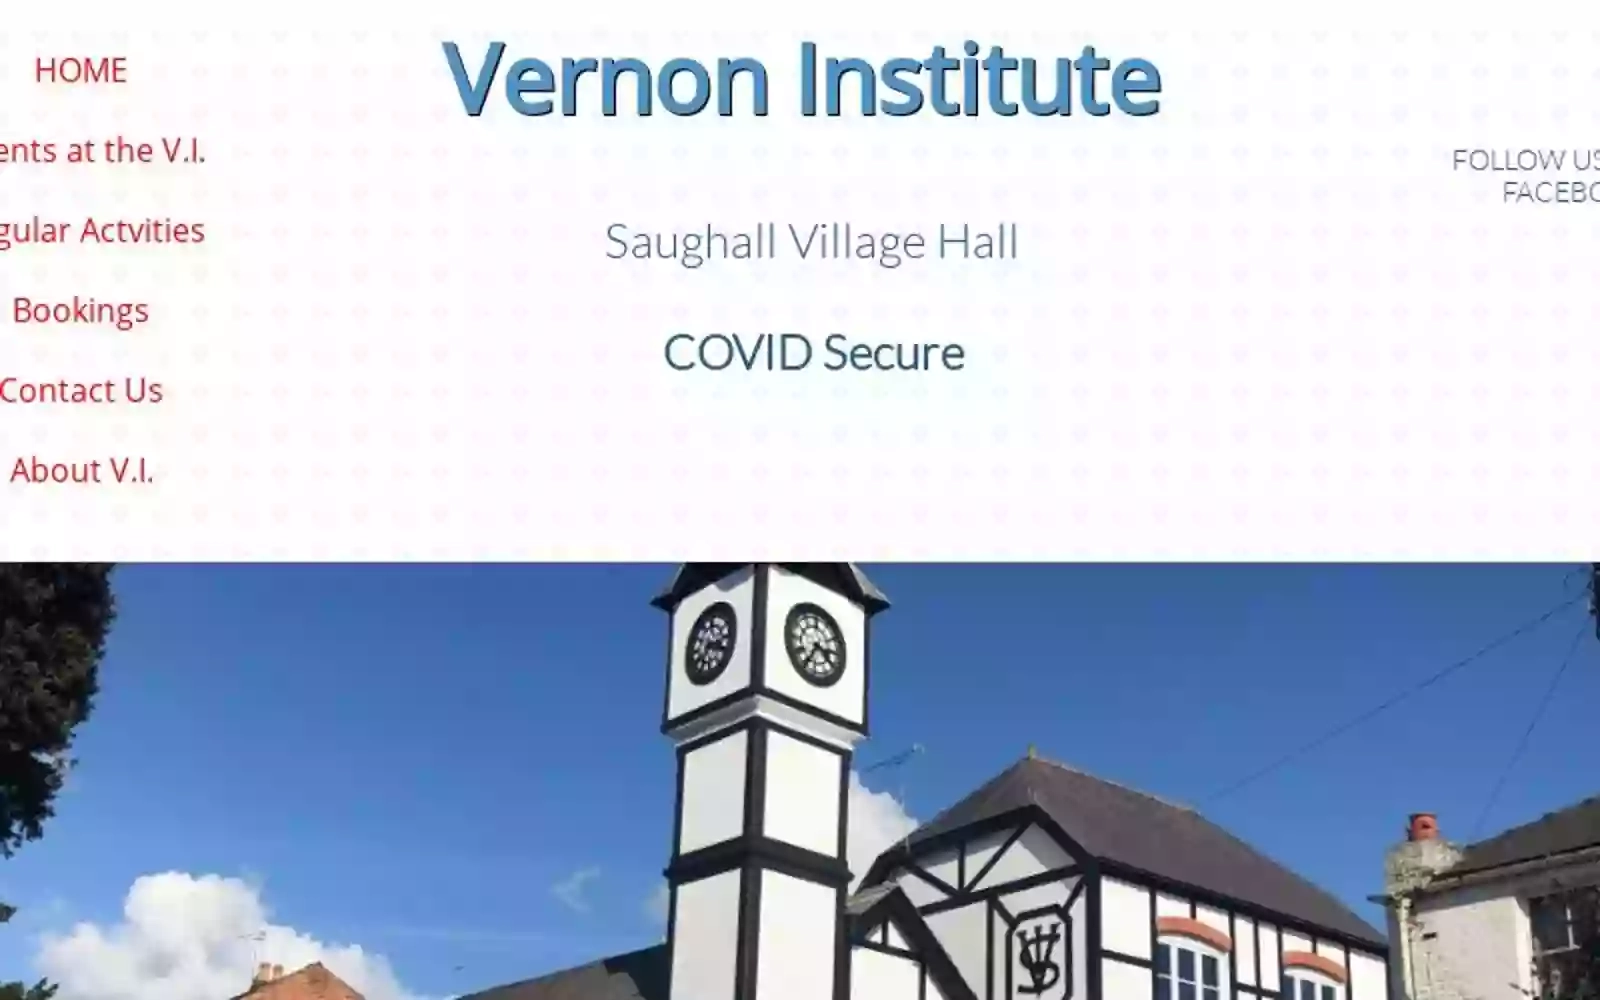 Vernon Institute